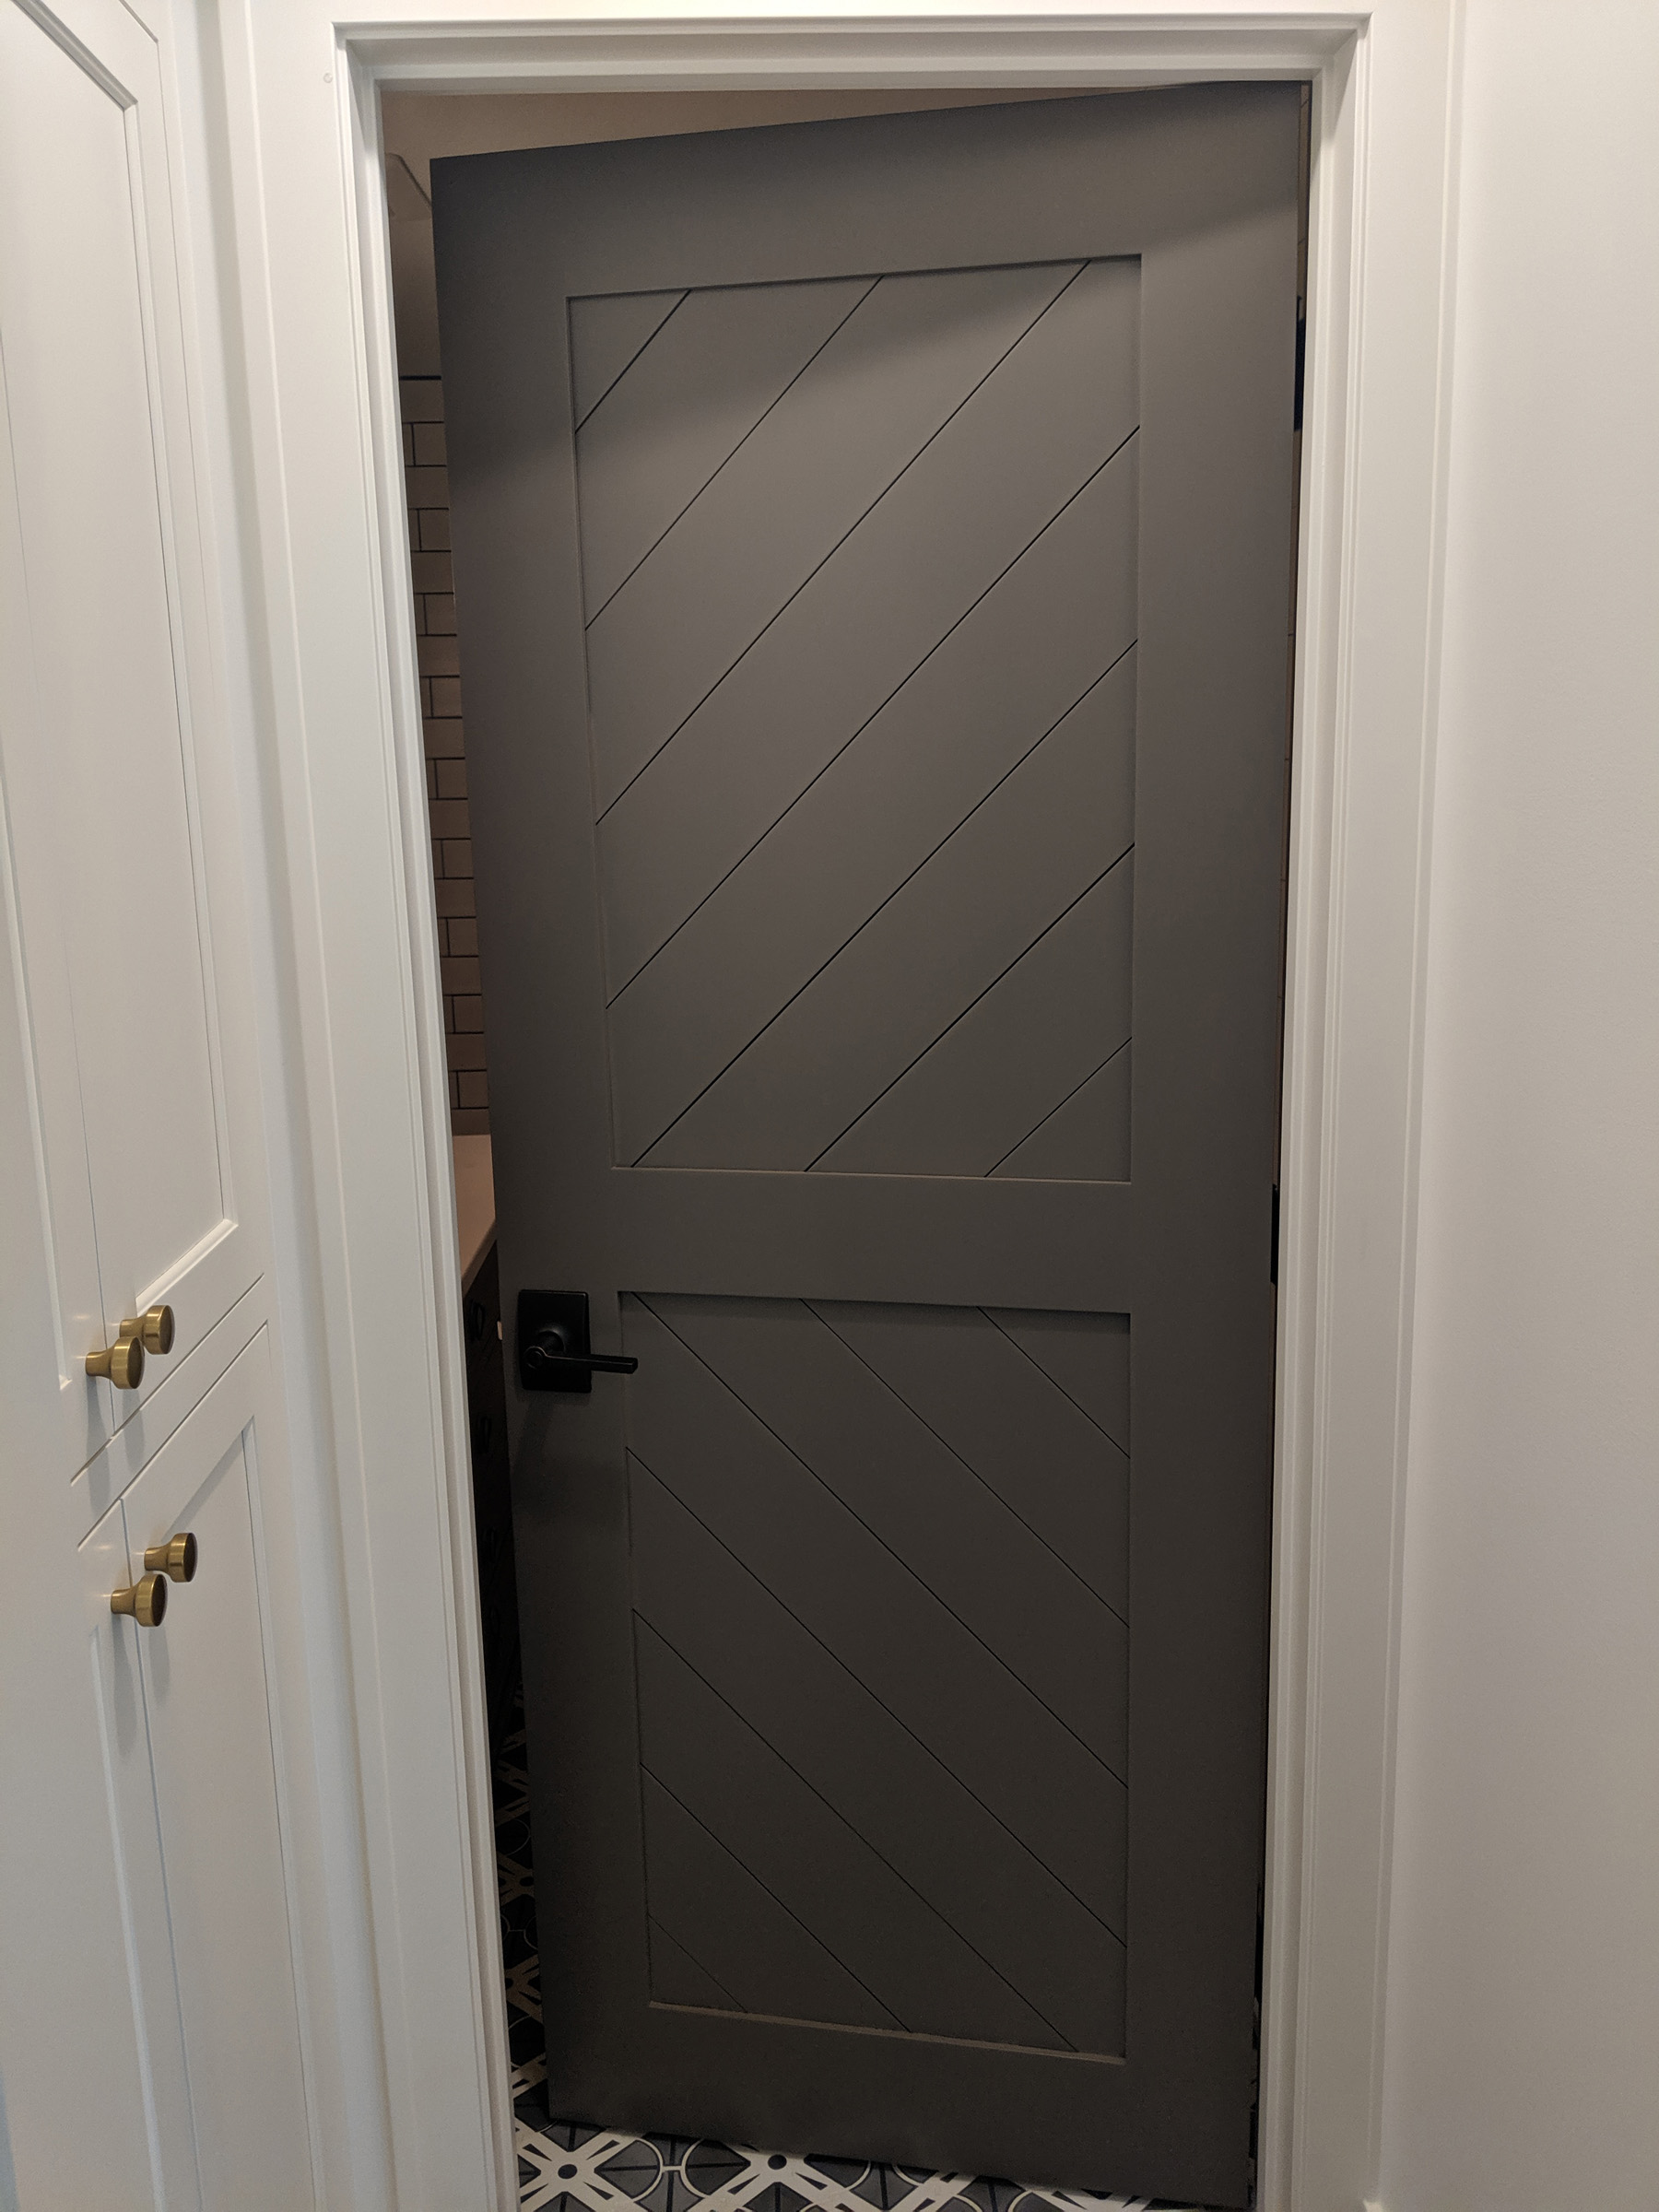 Custom V-Grooved shiplap 2- panel door